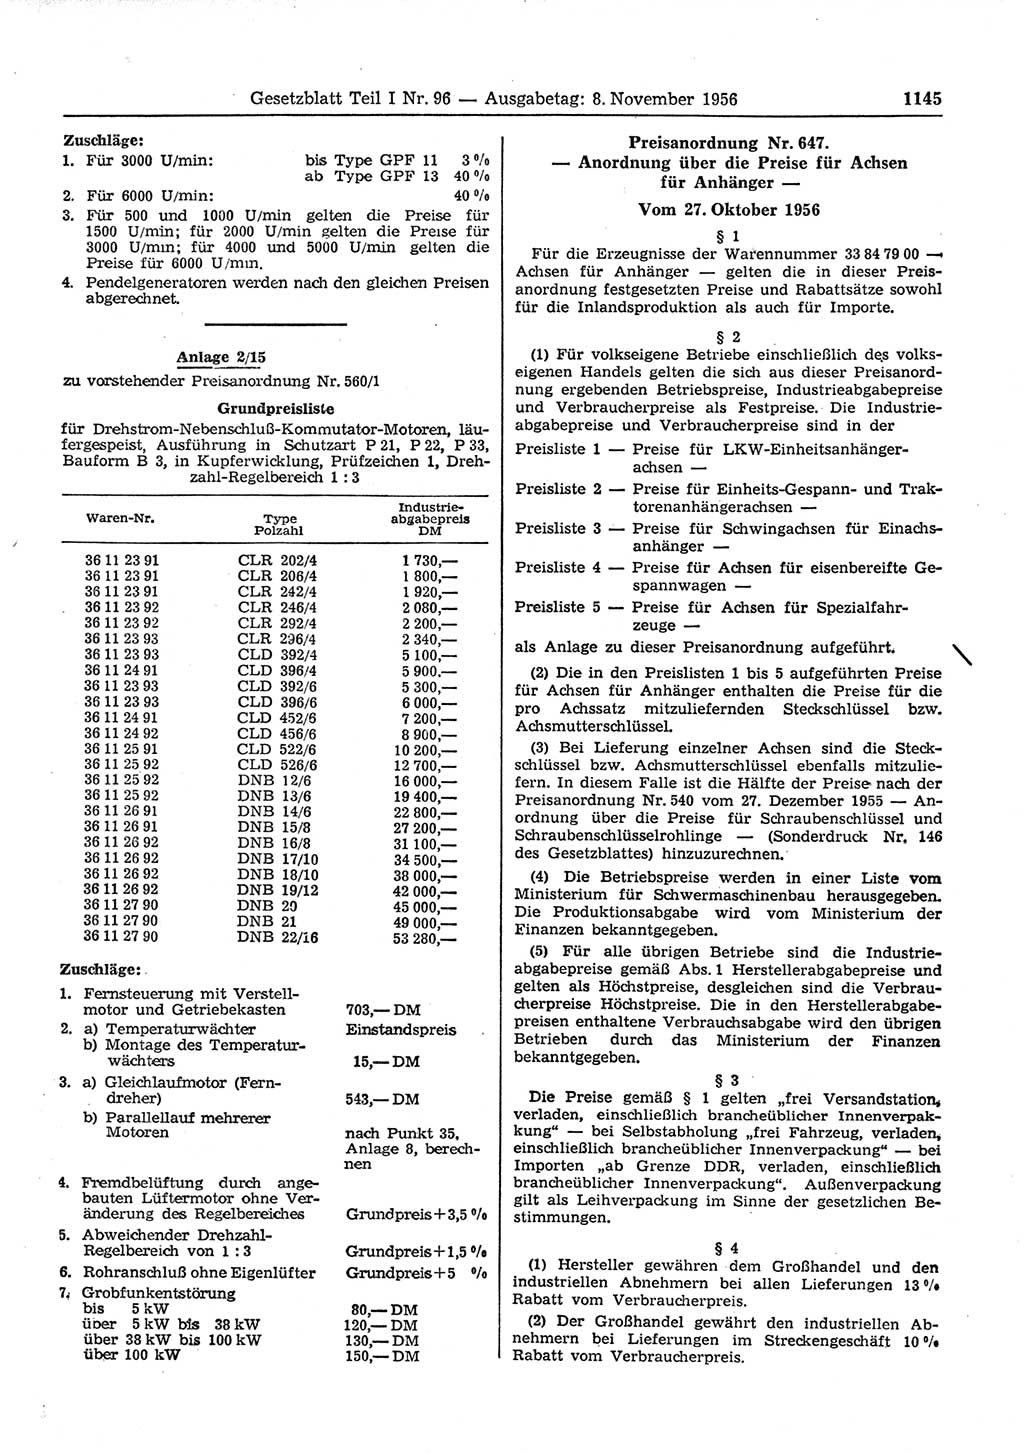 Gesetzblatt (GBl.) der Deutschen Demokratischen Republik (DDR) Teil Ⅰ 1956, Seite 1145 (GBl. DDR Ⅰ 1956, S. 1145)